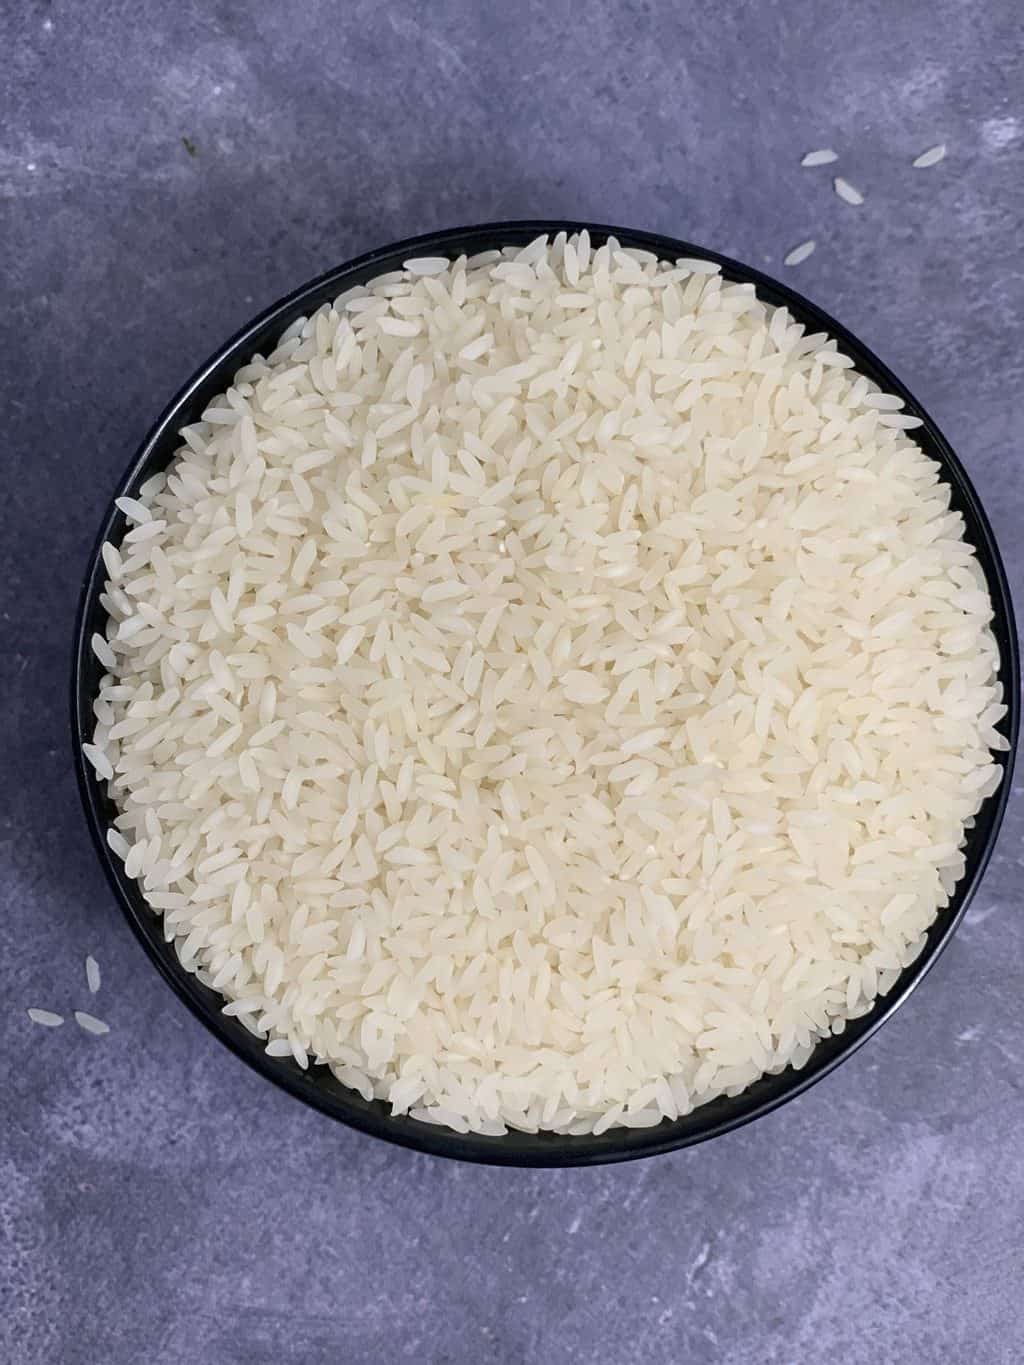 sona Mahsuri rice grains in a bowl